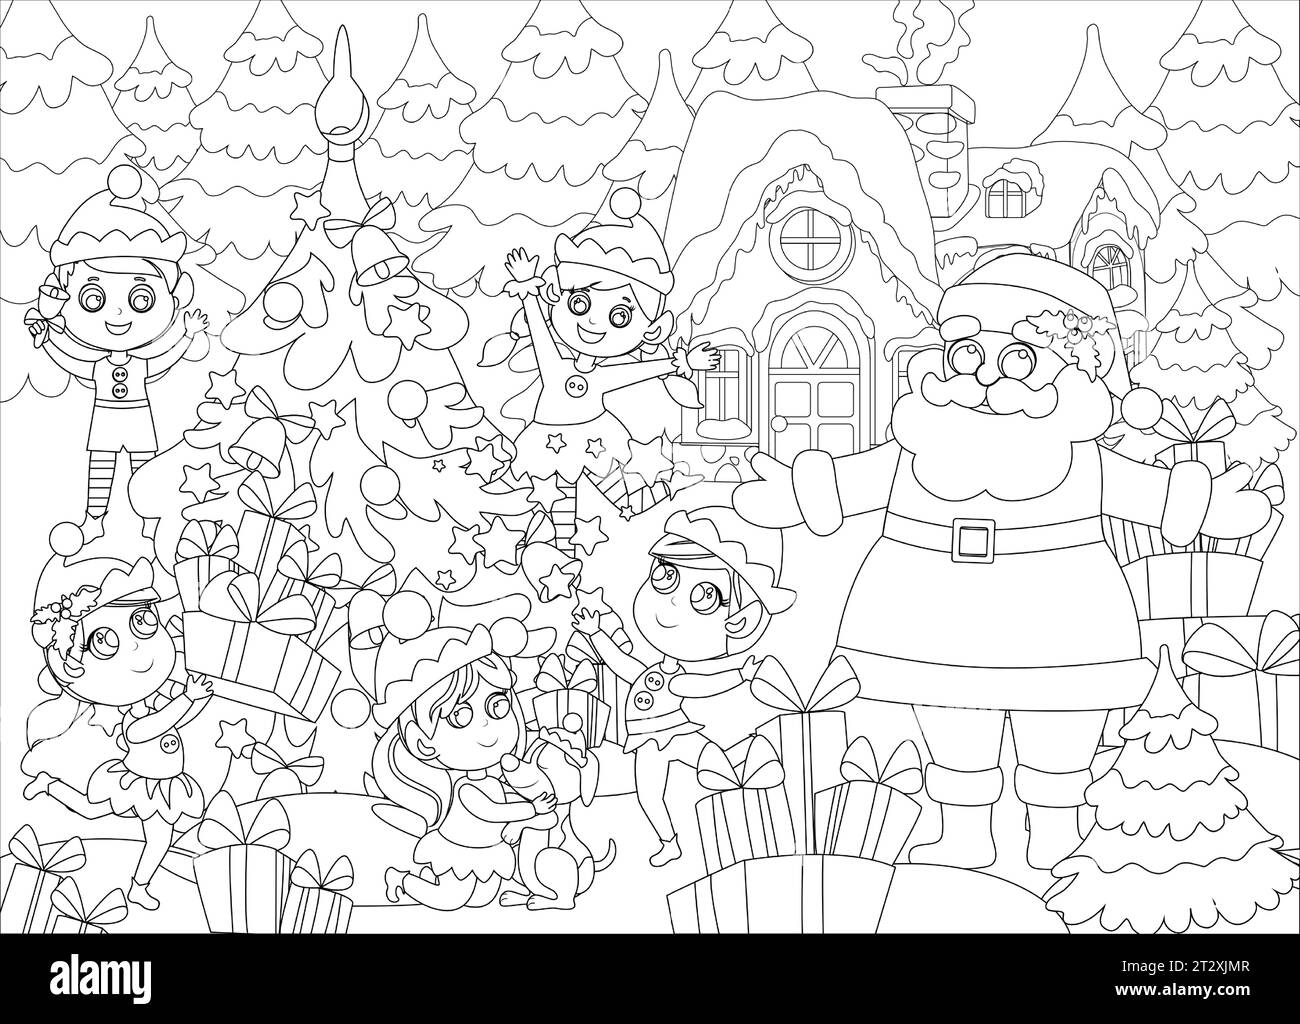 Ausmalseiten. Santa Claus mit Elfen draußen in der Nähe des Weihnachtsbaums. Winterlandschaft in der Nähe des Schneehauses des Weihnachtsmanns. Stimmung des Glücks und der Freude. Stock Vektor